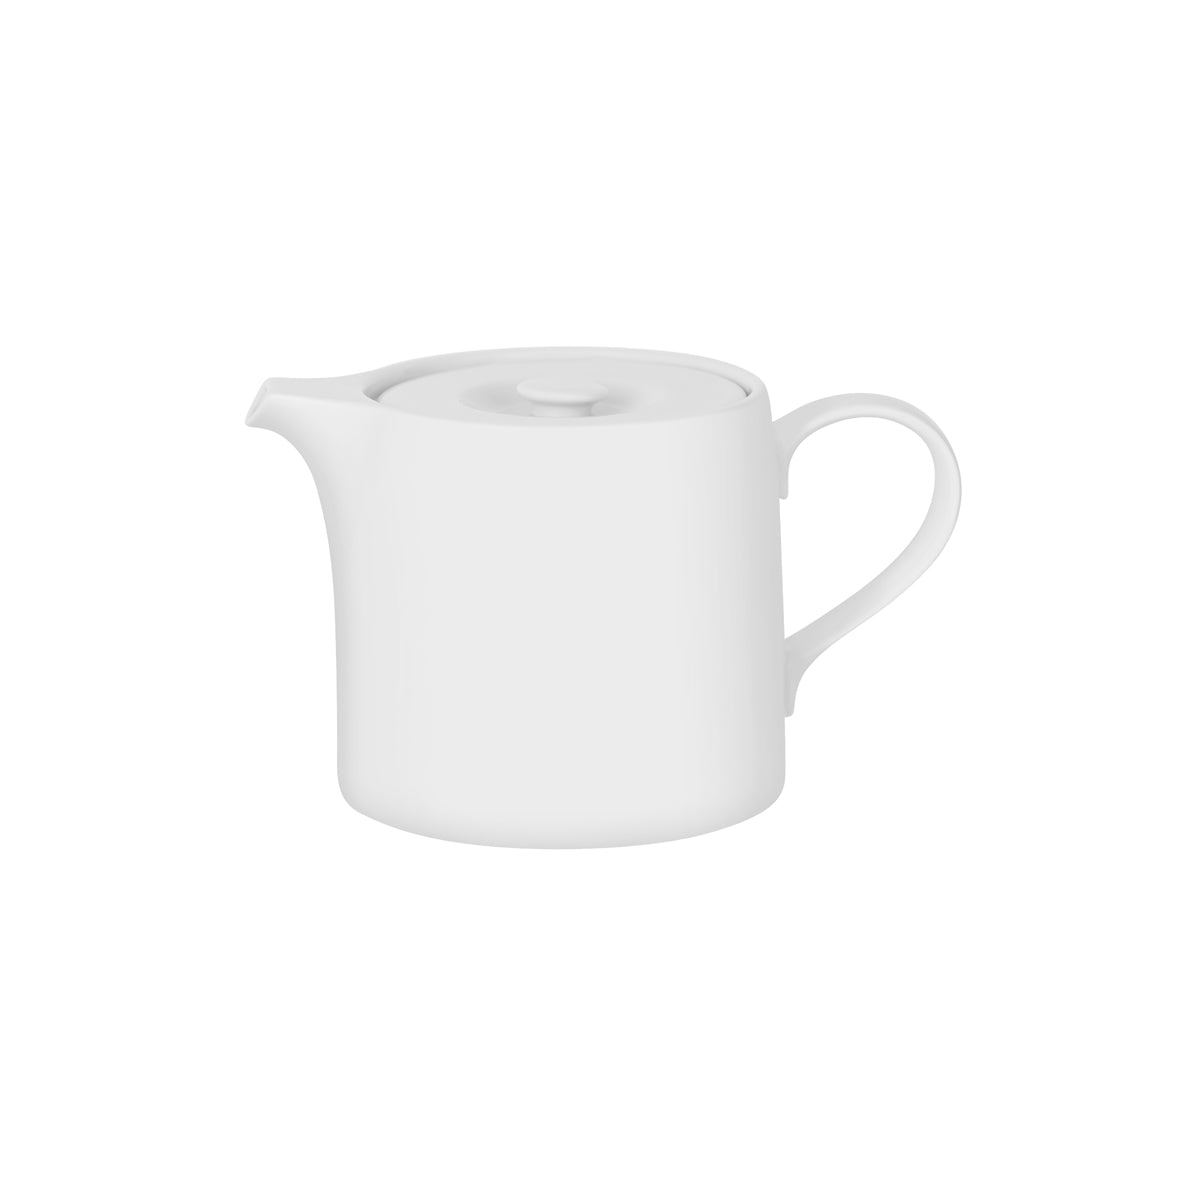 94906 Royal Porcelain White Album Teapot with Lid 750ml Tomkin Australia Hospitality Supplies